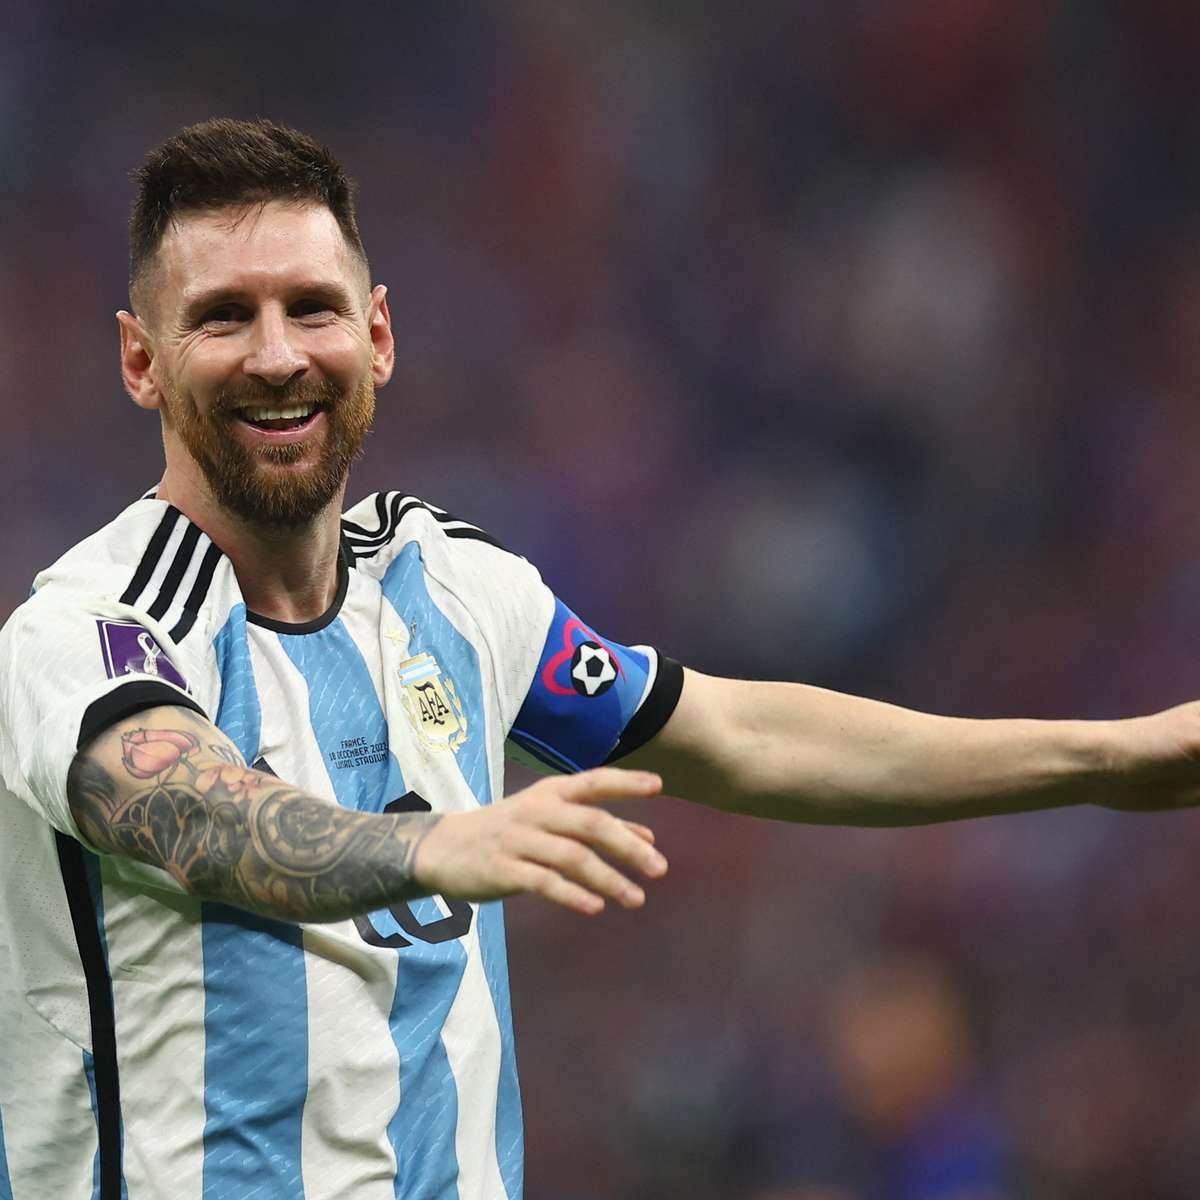 Argentina de Messi é campeã em uma das maiores finais da Copa do Mundo  FIFA; veja todos os vencedores